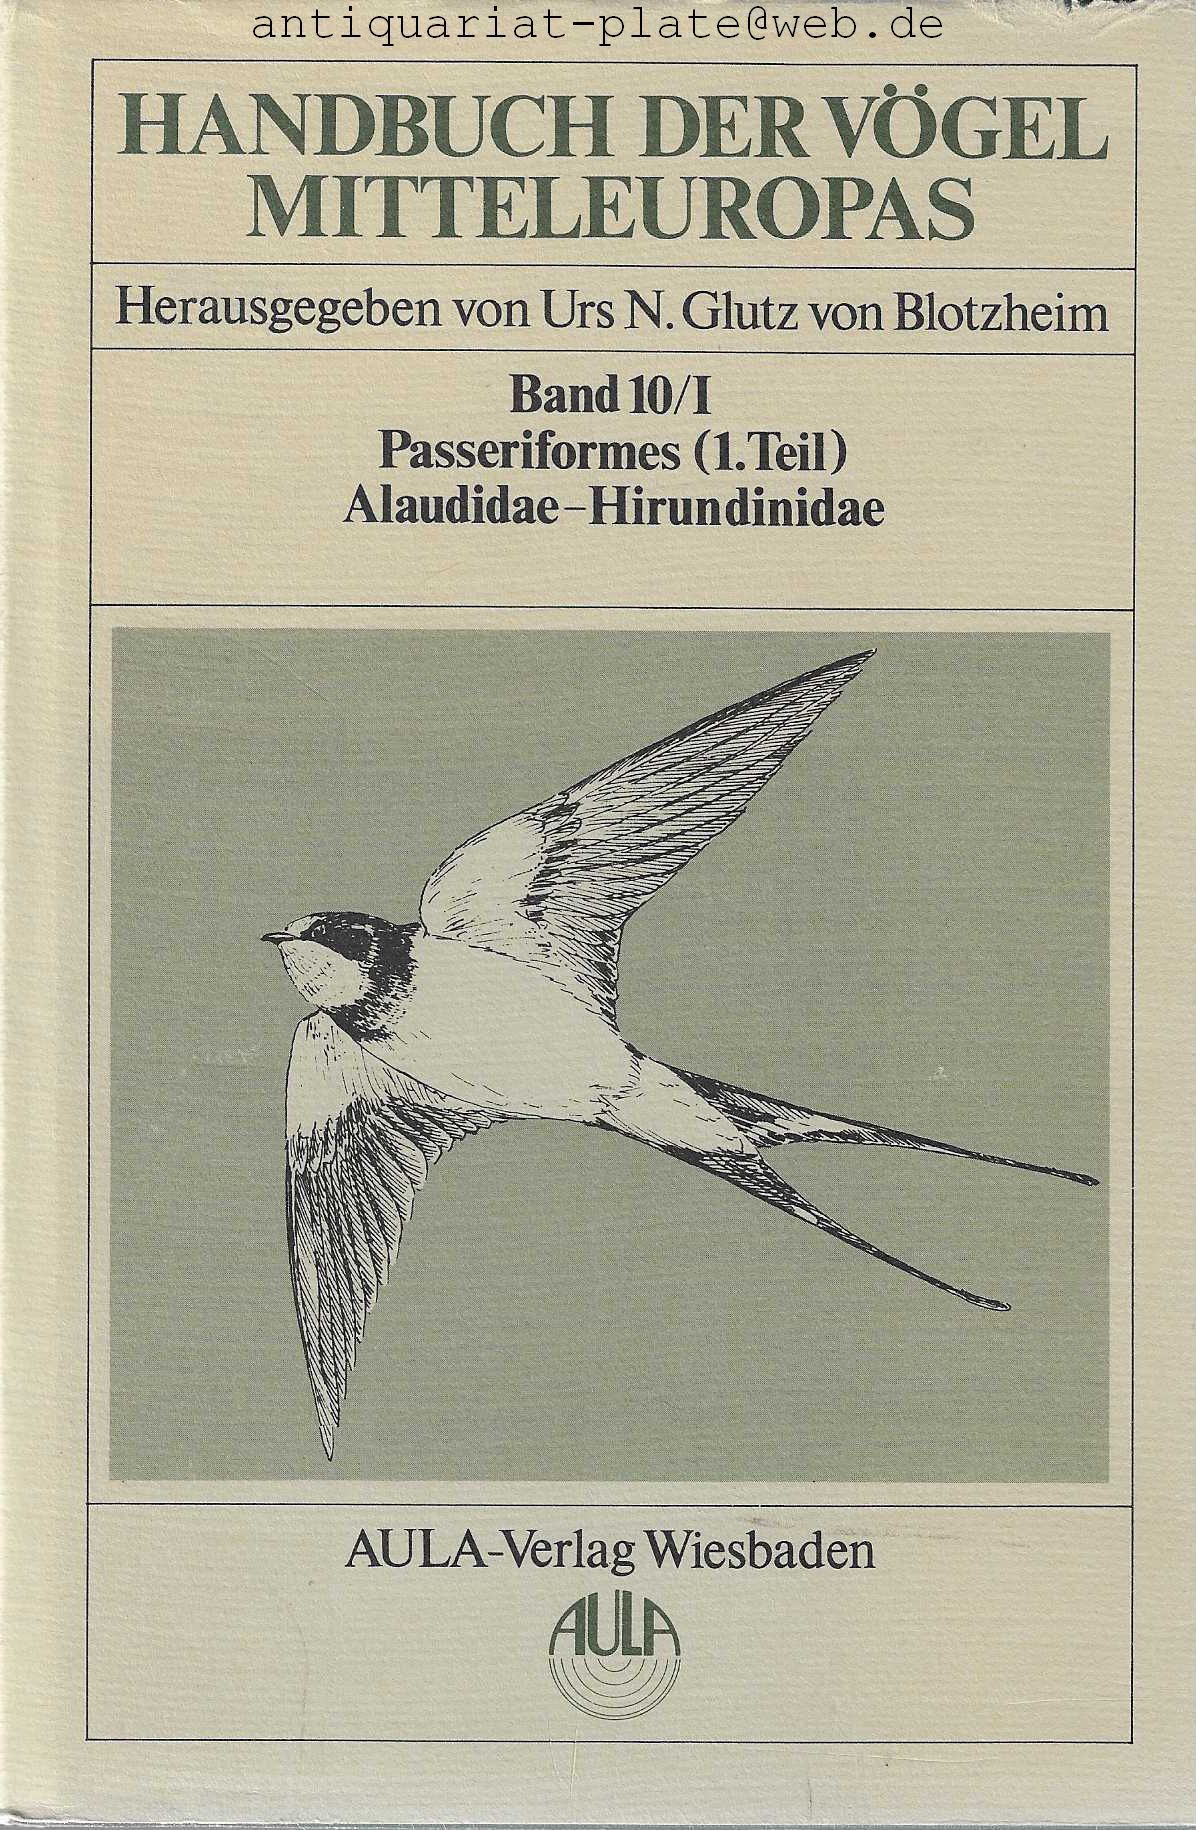 Handbuch der Vögel Mitteleuropas. Herausgegeben von Urs. N. Glutz von Blotzheim. (Band 4). Falconiformes. 2., durchgesehene Auflage. 1989. (Band 9). Columbiformes - Piciformes. 2., durchgesehene Auflage. 1994. (Band !0/I). Passeriformes (1.Teil). Alaudidae. Hirundinidae. 1985. (Band 10/II Passeriformes (1.Teil). Motacillidae-Prunellidae. 1985. (Band 11/I).  Passeriformes (2.Teil). Turdidae. 1988. (Band 11/II). Passeriformes (2.Teil). Turdidae.1988. (Band 12/I). Passeriformes (3.Teil). Sylviidae. 1991. (Band 12/II). Passeriformes (3.Teil). Sylviidae. 1991. (Band 13/I). Passeriformes (4.Teil). Muscicapidae - Paridae. 1993. (Band 13/II). Passeriformes (4.Teil). Sittidae - Laniidae. 1993. (Band 13/III). Passeriformes (4.Teil). Corvidae - Sturnidae. 1993. (Band 14/I). Passeriformes (5.Teil). Passeridae. 1997. (Band 14/II). Passeriformes (5.Teil). Frinfillidae. 1997. (Band 14/III). Passeriformes (5.Teil). Emberizidae. 1997. - Blotzheim, Urs. N. Glutz von